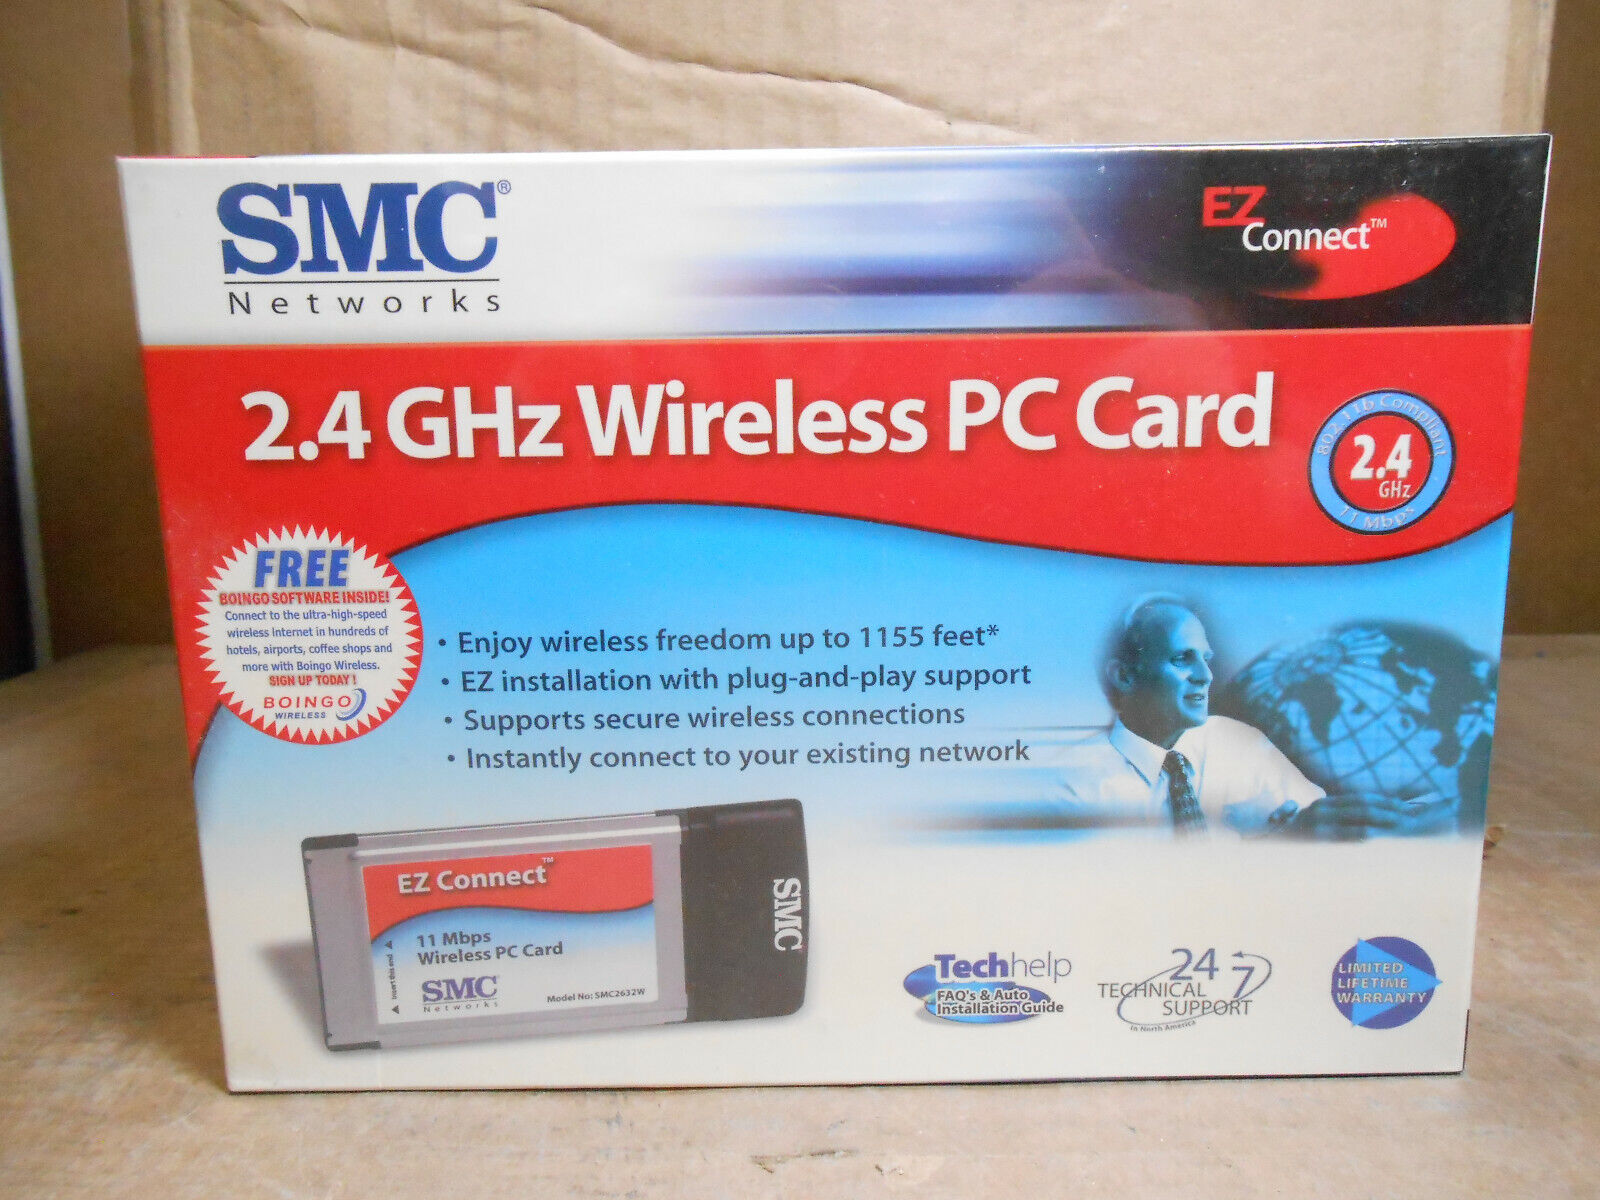 SMC NETWORKS 2.4 GHz WIRELESS PC CARD